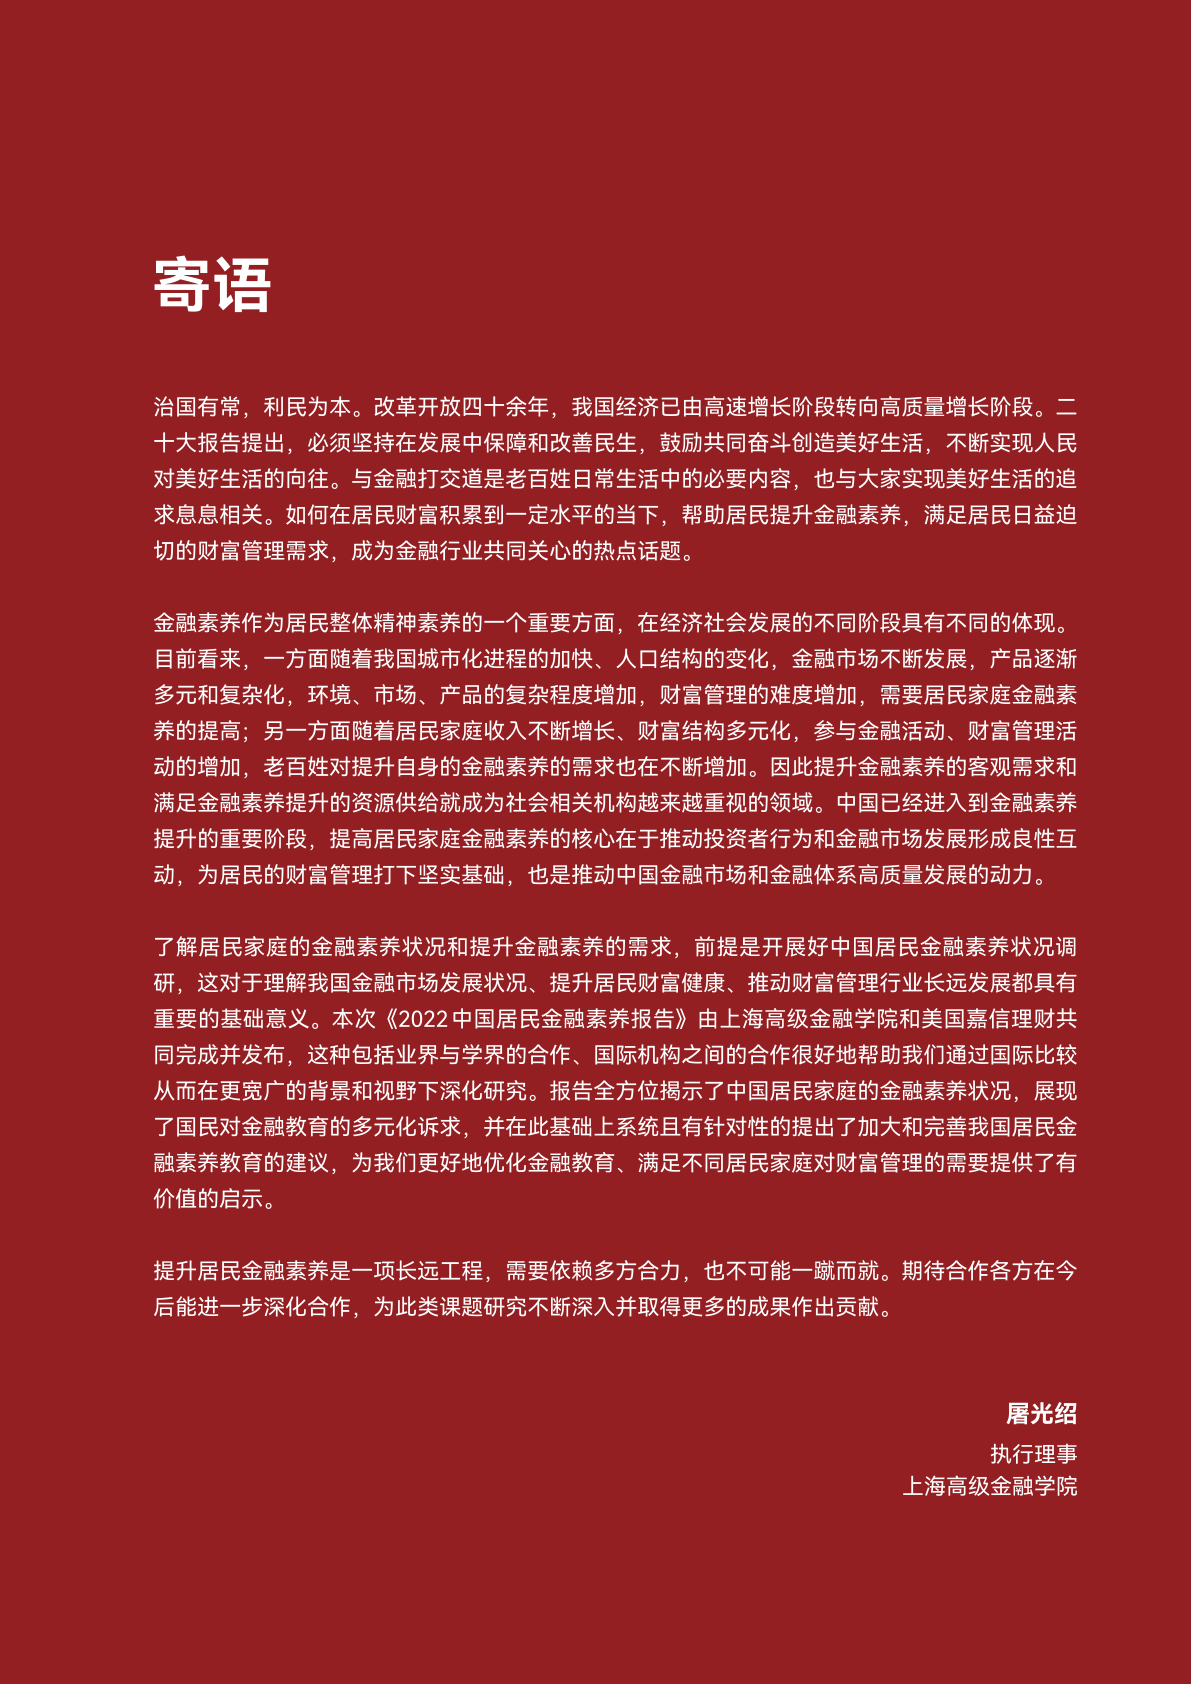 上海高级金融学院：2022中国居民金融素养报告